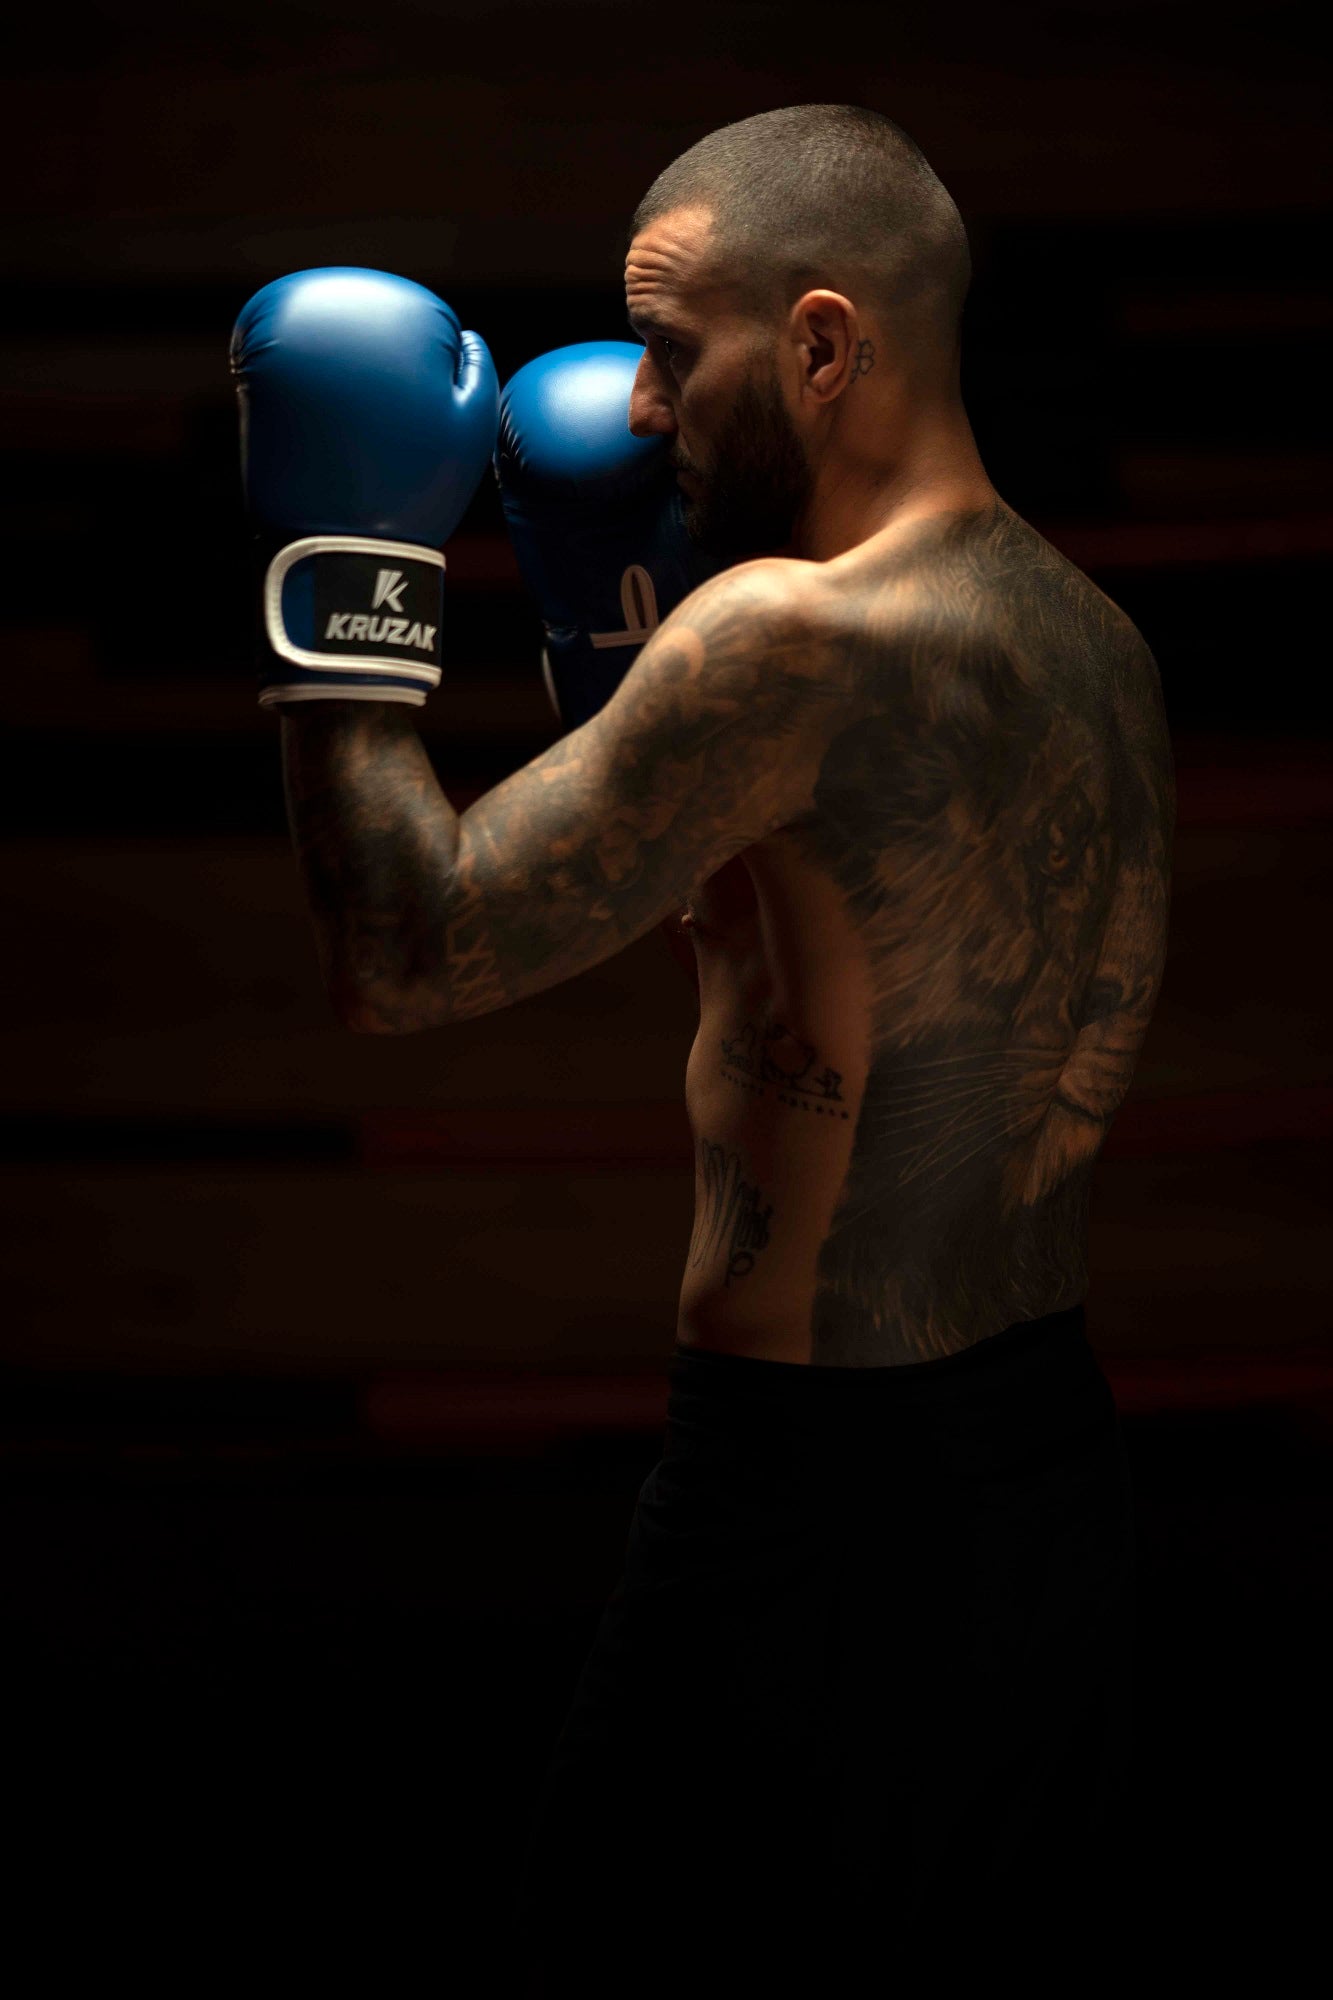 Man wearing Kruzak Blue boxing gloves